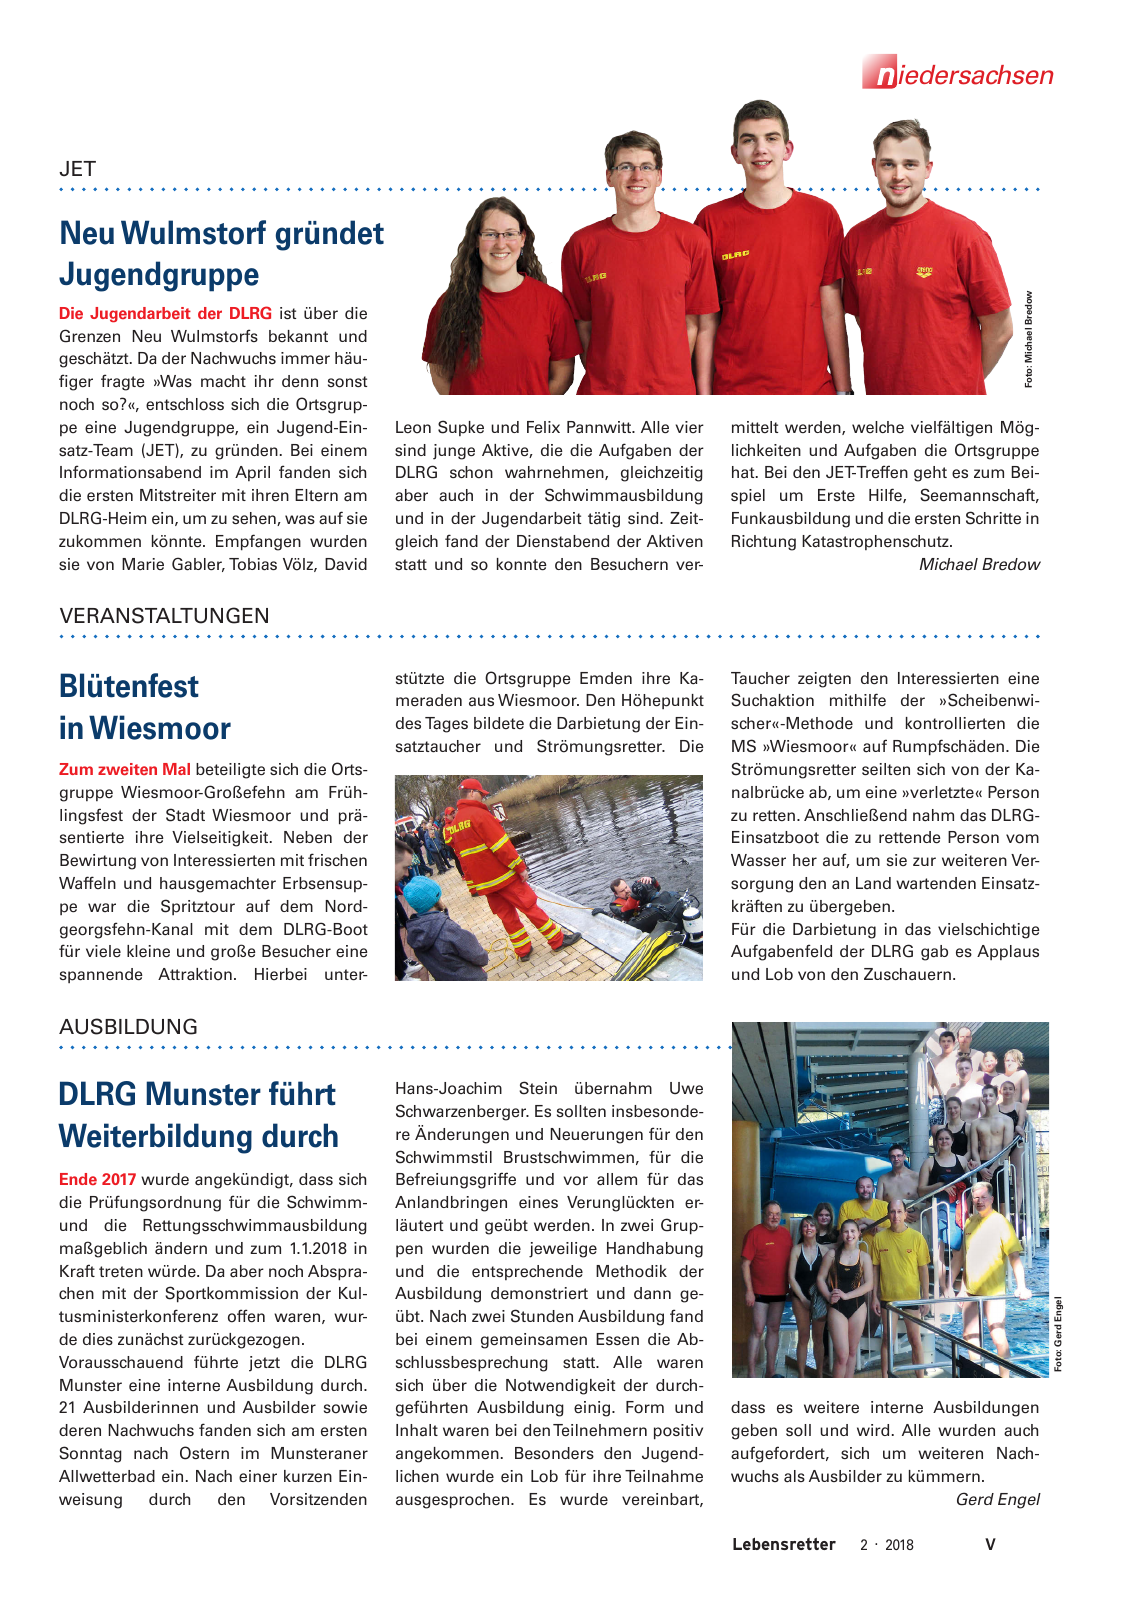 Vorschau Lebensretter 2/2018 - Regionalausgabe Niedersachsen Seite 7